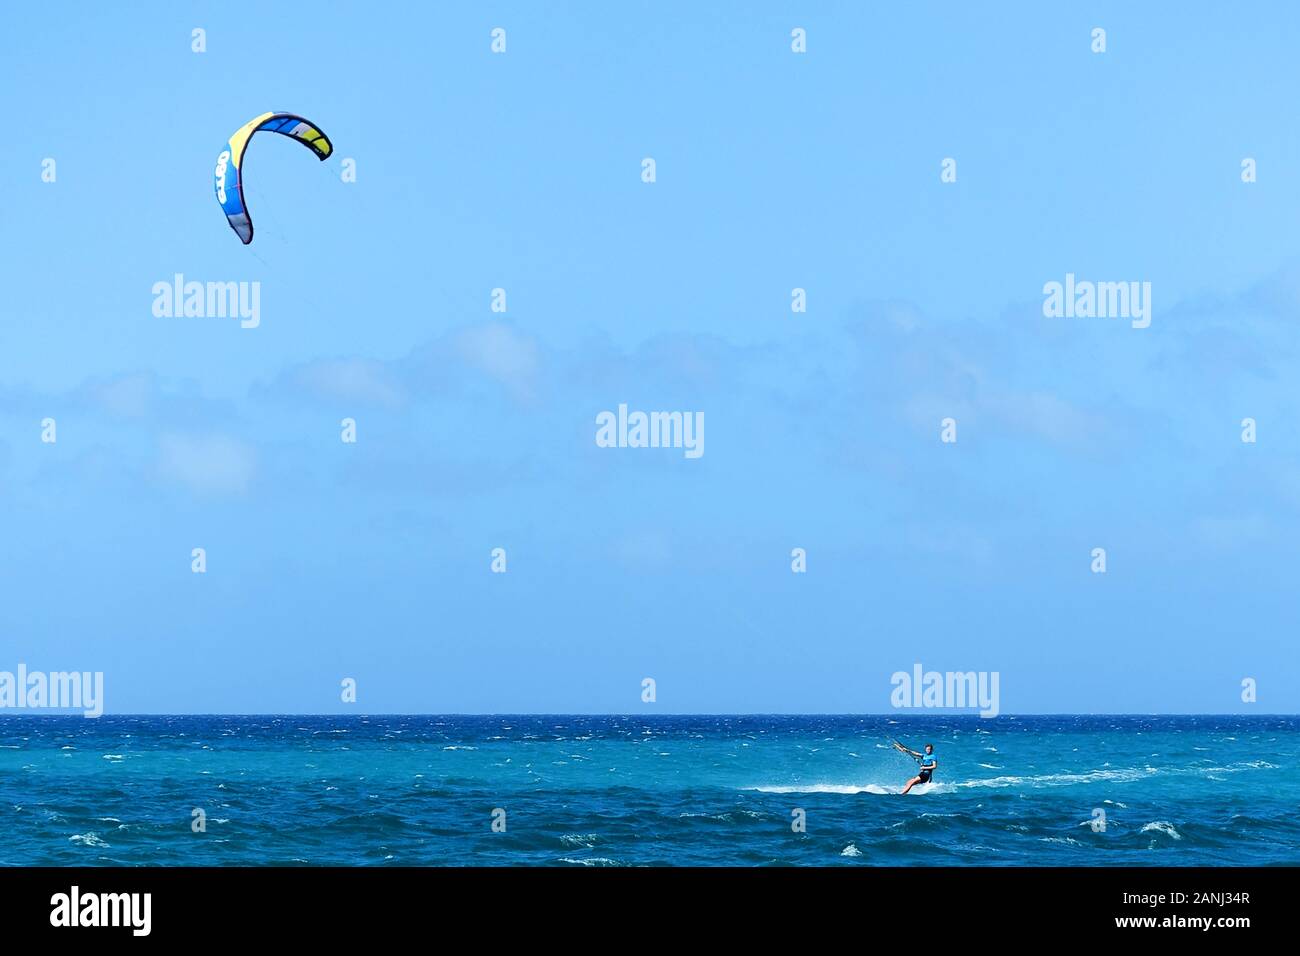 Un kiteboarder, nei Caraibi, che viaggia a velocità attraverso il mare con un vento alto lo sospinse in avanti con il suo aquilone di potenza Foto Stock